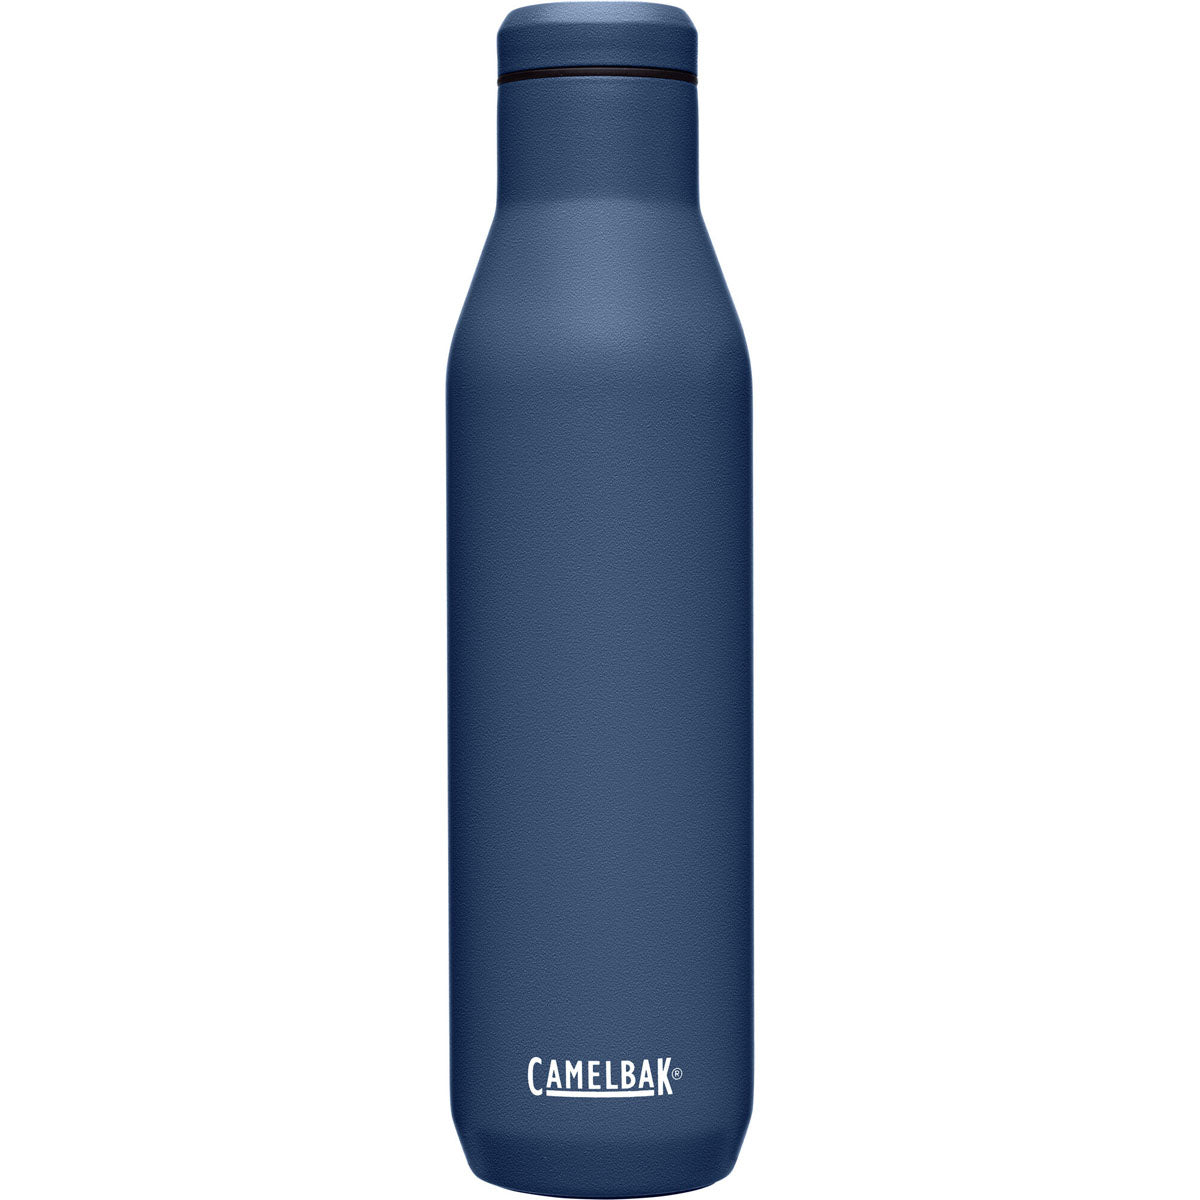 Camelbak Wine Bottle 25oz. Bottle - Vacuum Insulated Stainless Steel